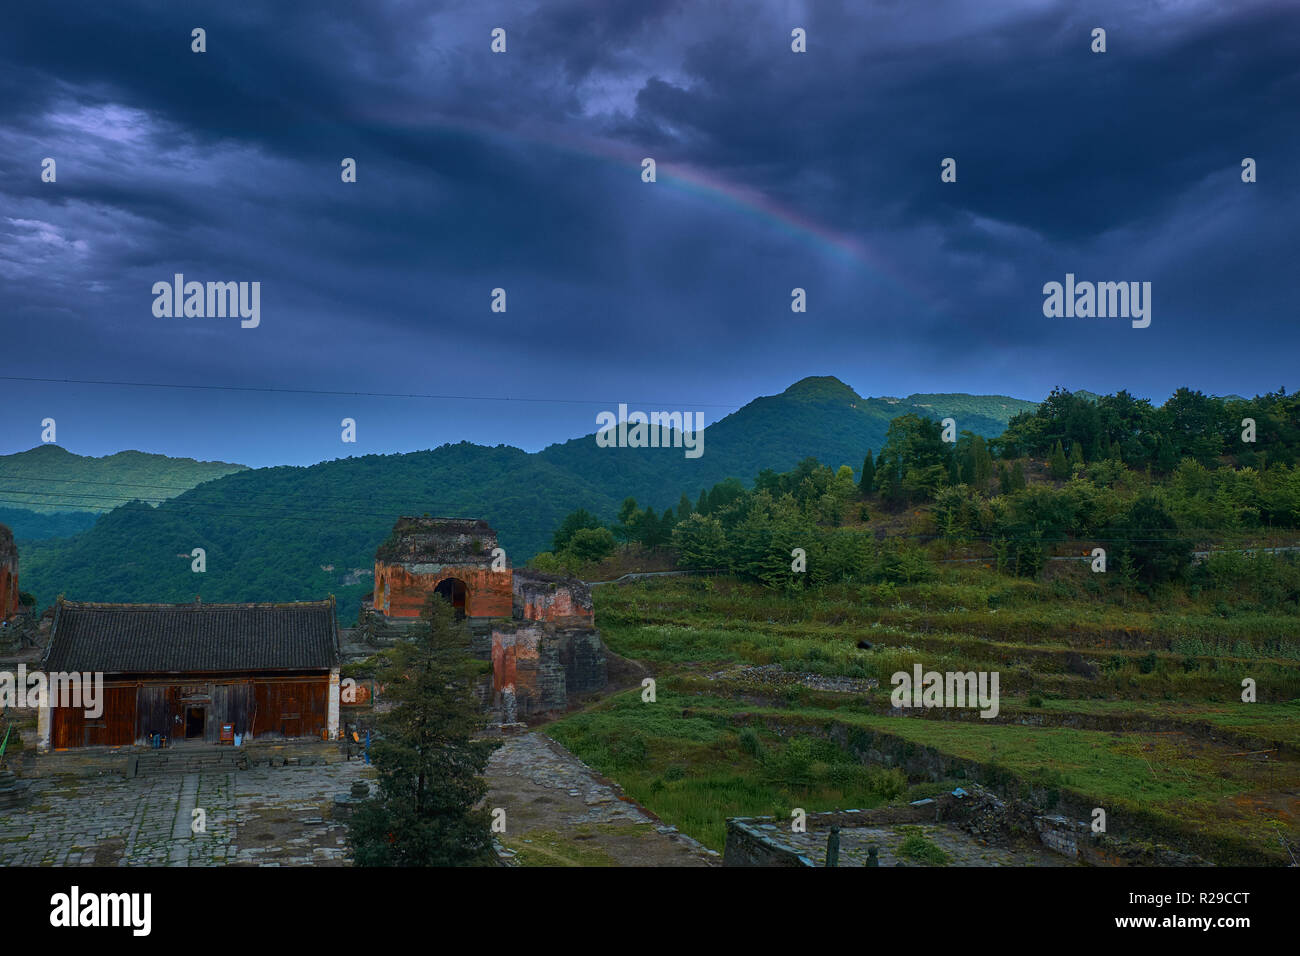 Regenbogen über dem alten Kung Fu Tempel auf der Spitze des Berges. Stockfoto